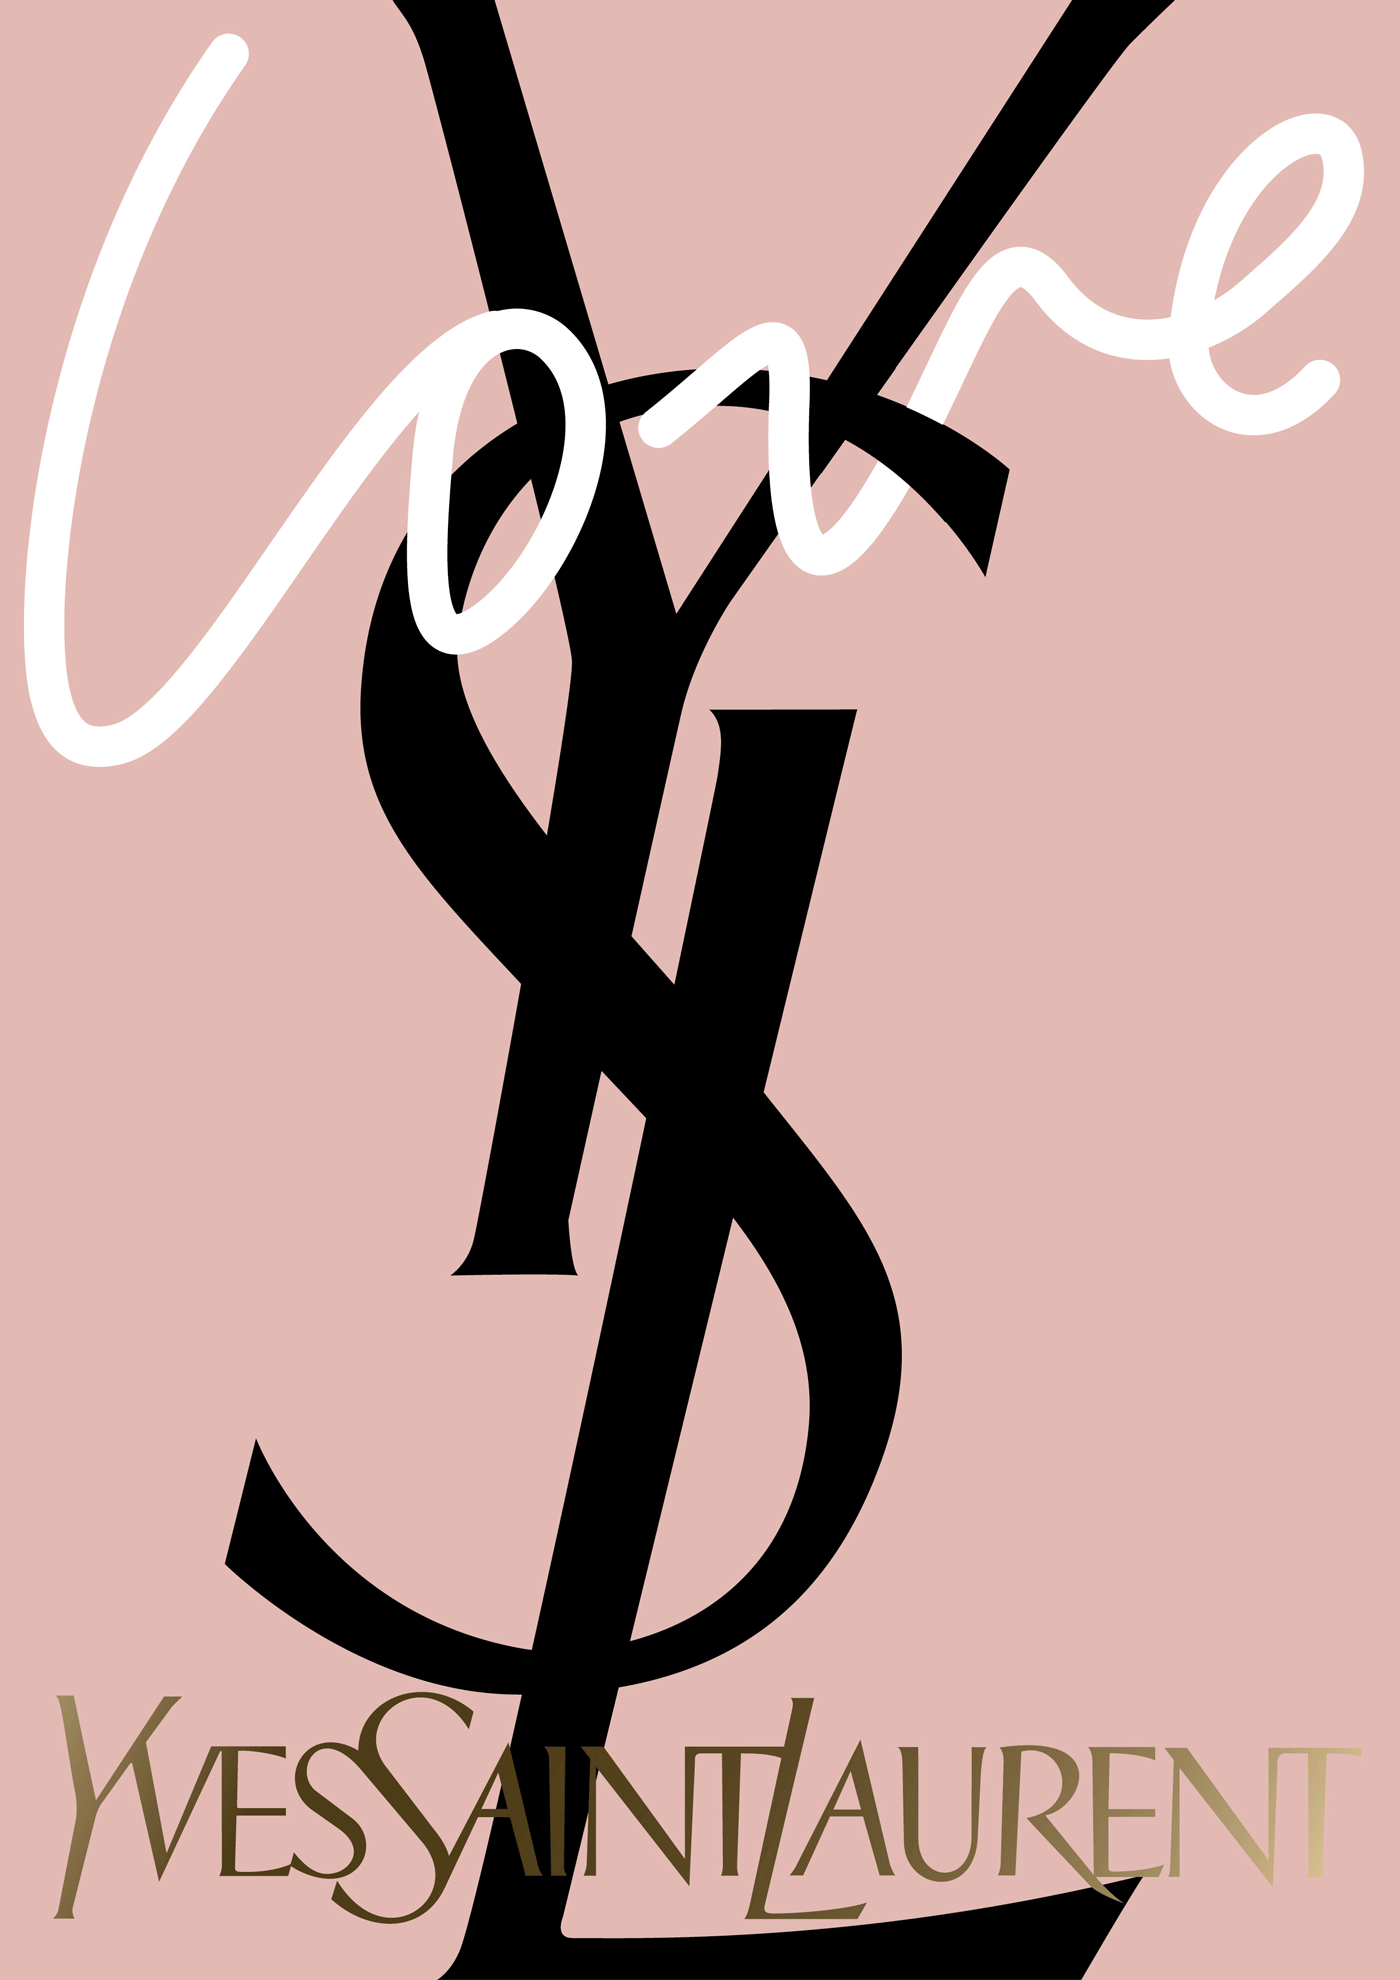 Yves Saint Laurent / YSL Parfums – YSL Love event concept 2018 (proposal)